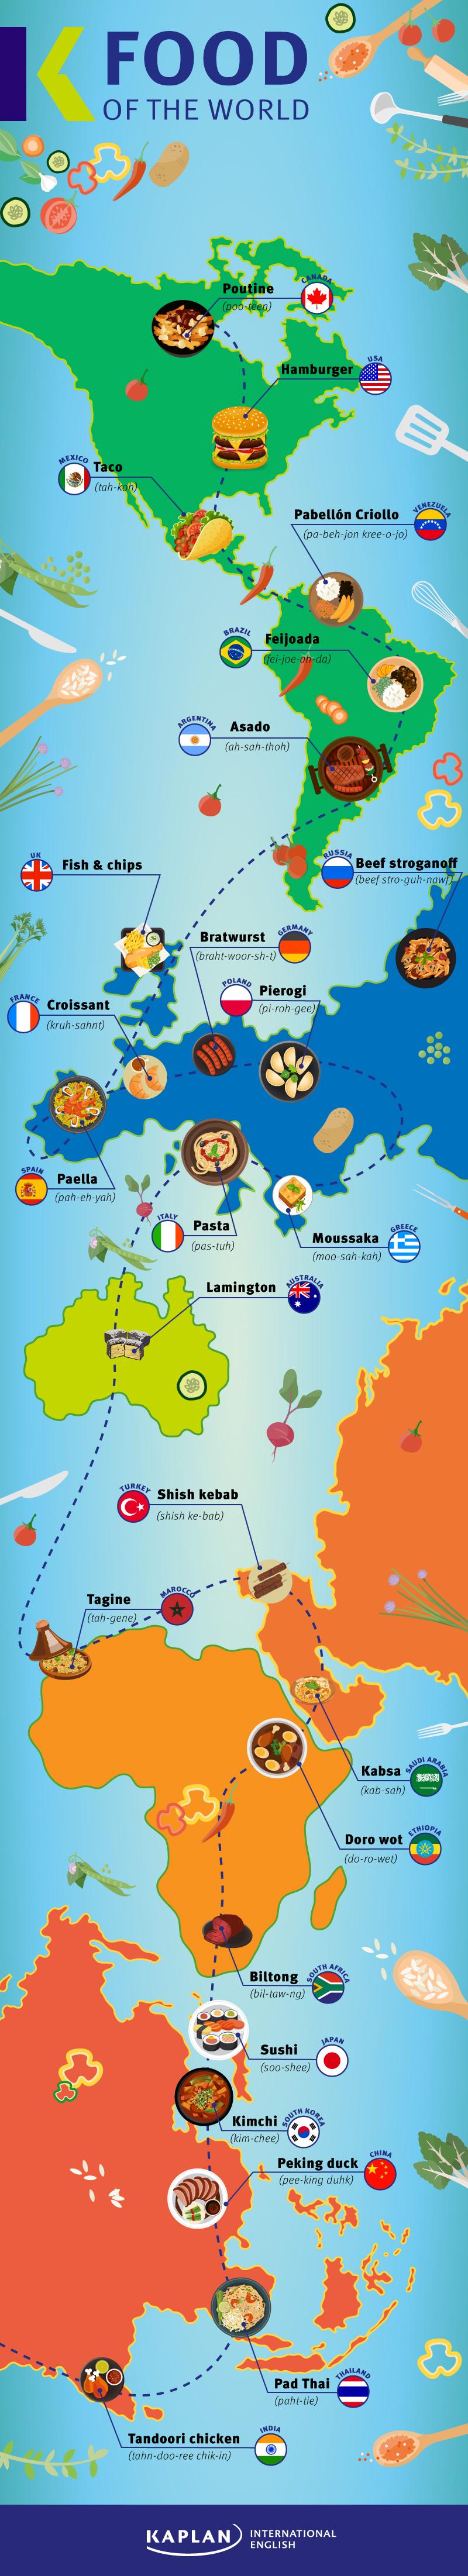 اطباق الطعام التقليدية في العالم - إنفوجرافيك